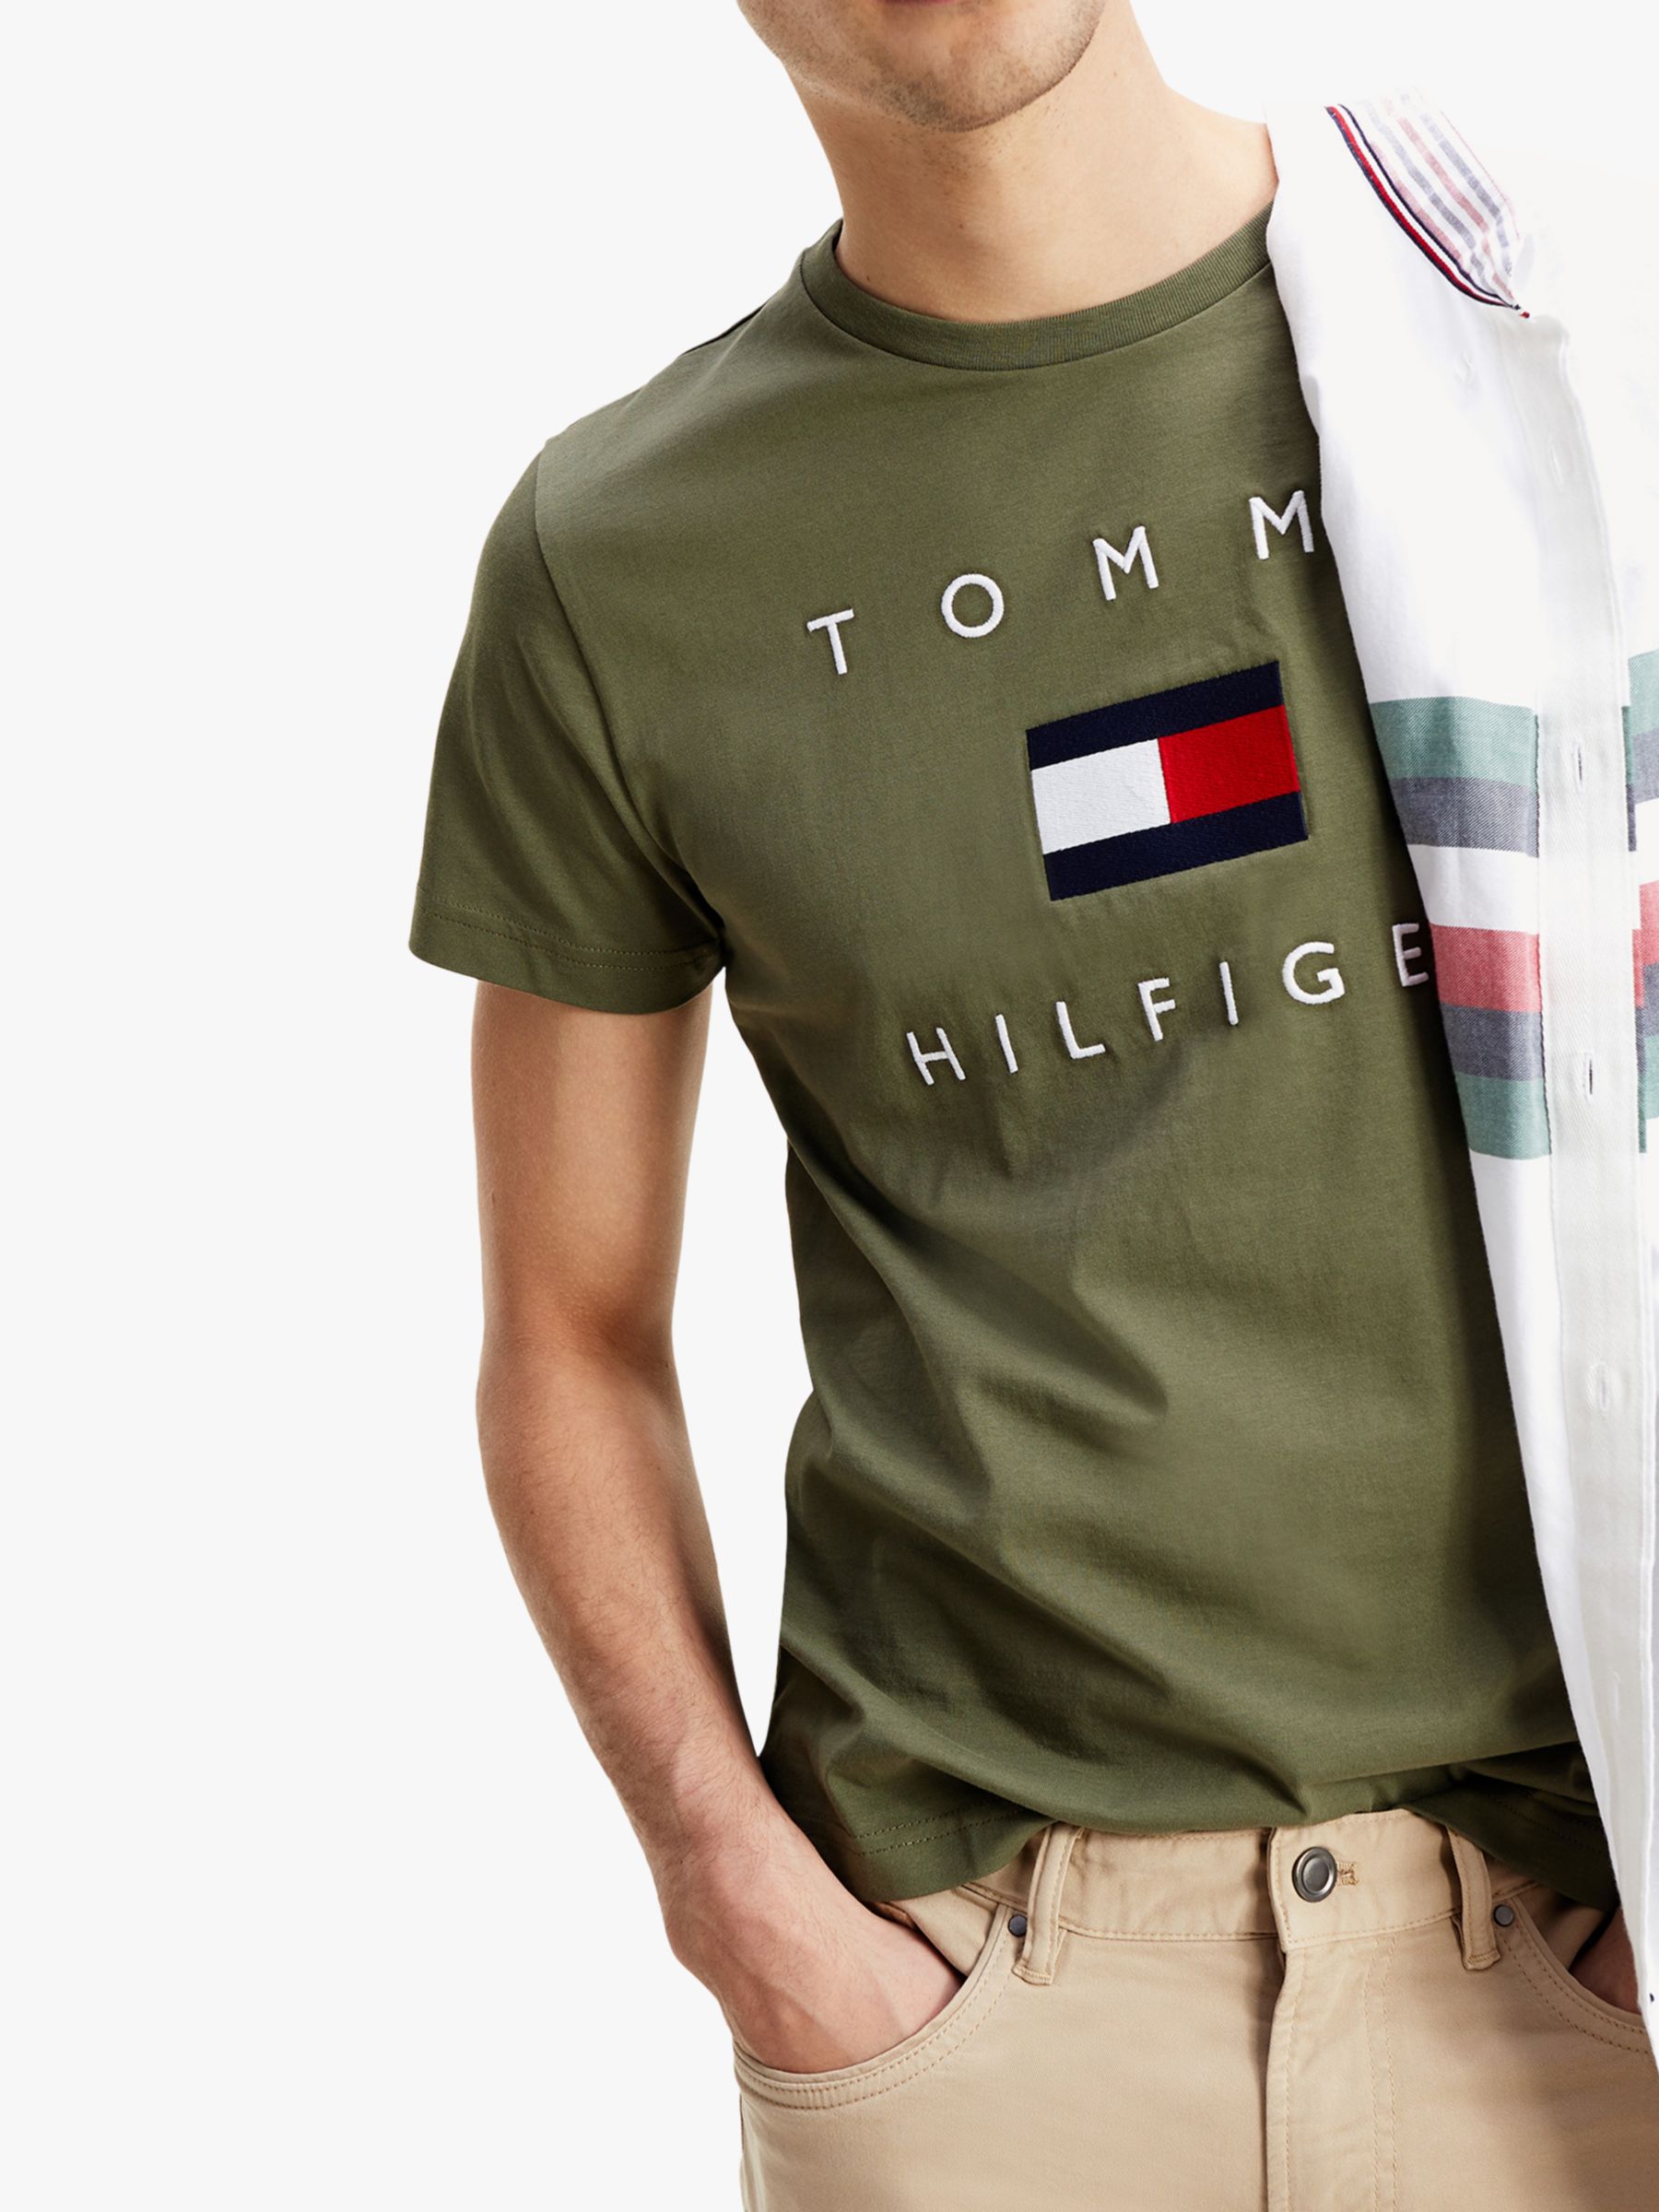 tommy hilfiger t shirt olive